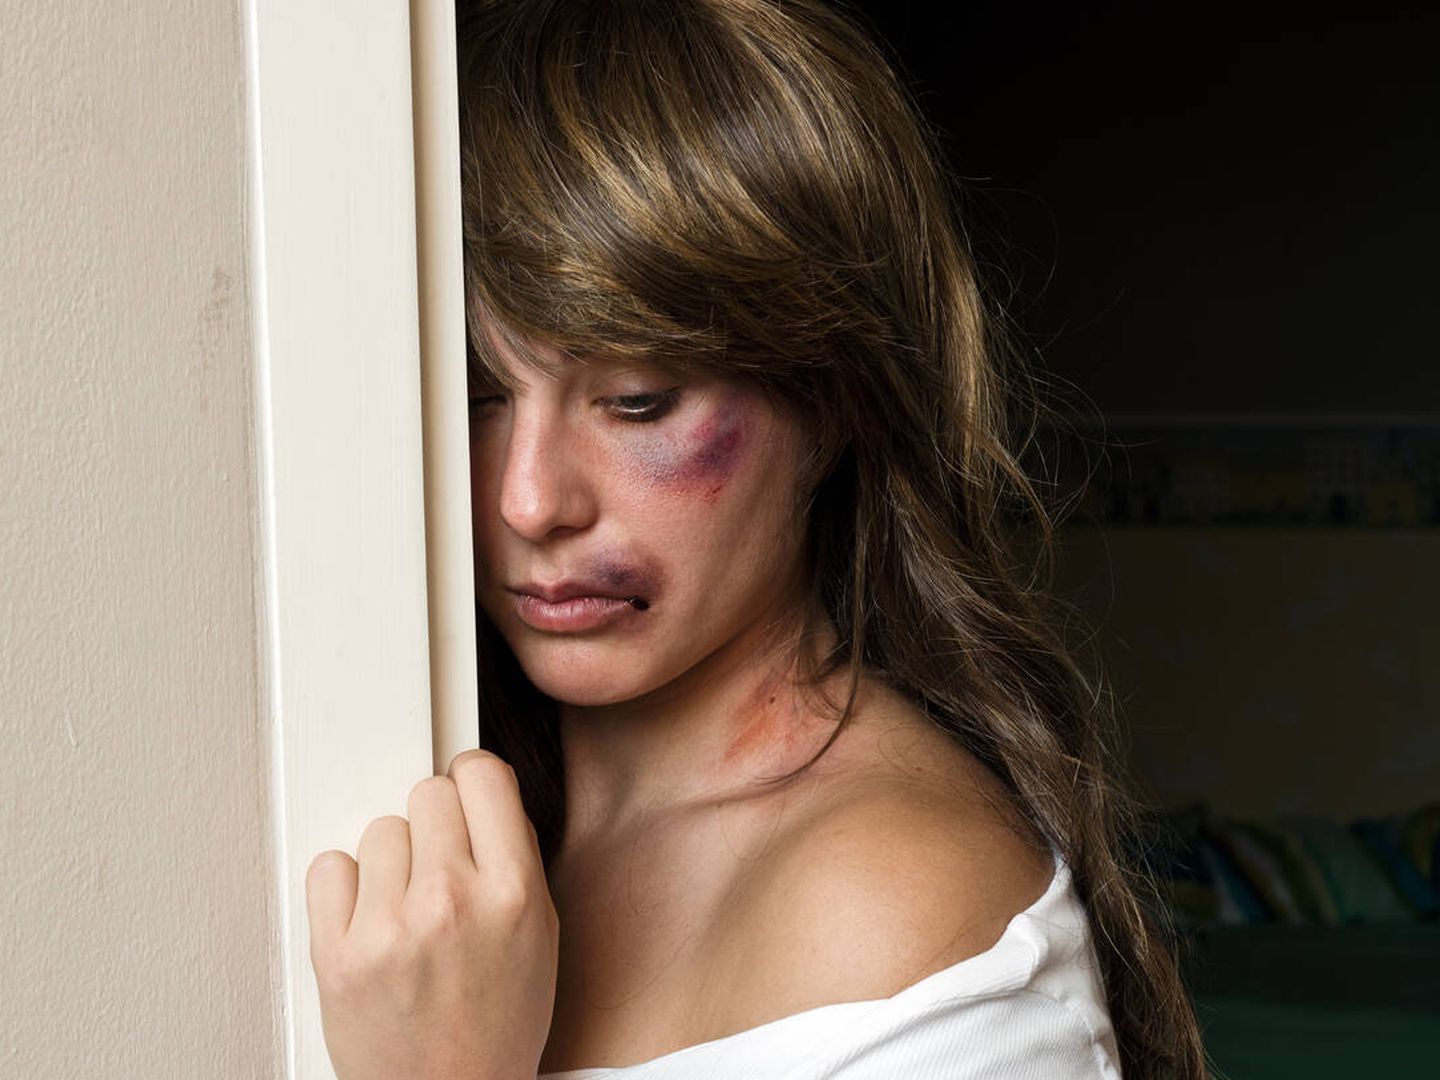 El 80% de las supervivientes de violencia de género sufren golpes en la cabeza, cara y cuello. (iStock)